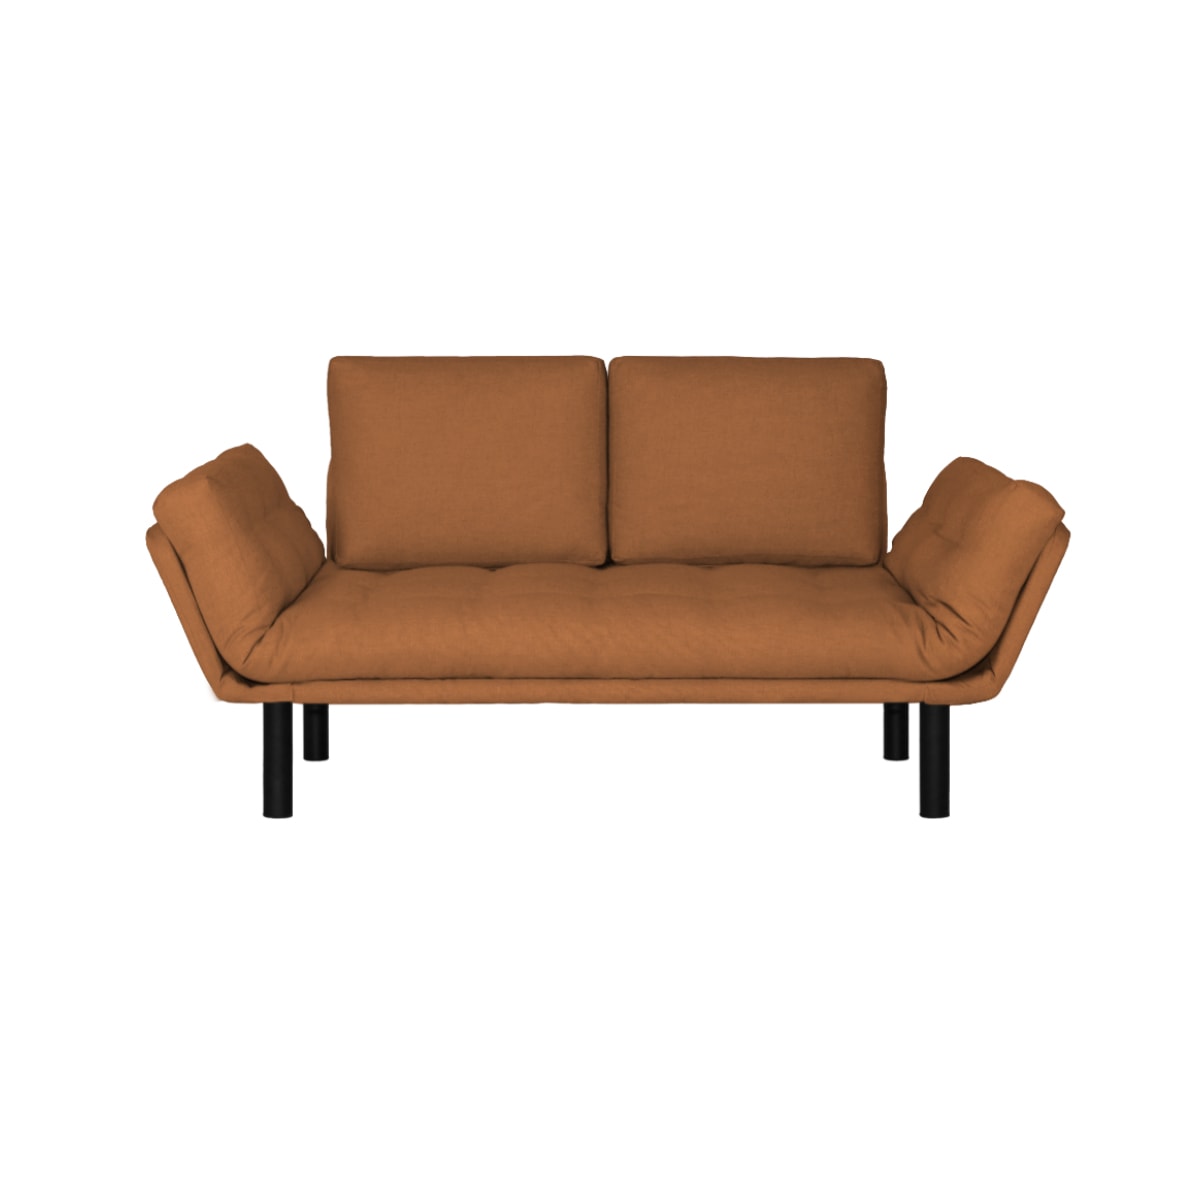 Sofa cama Futon Company ®